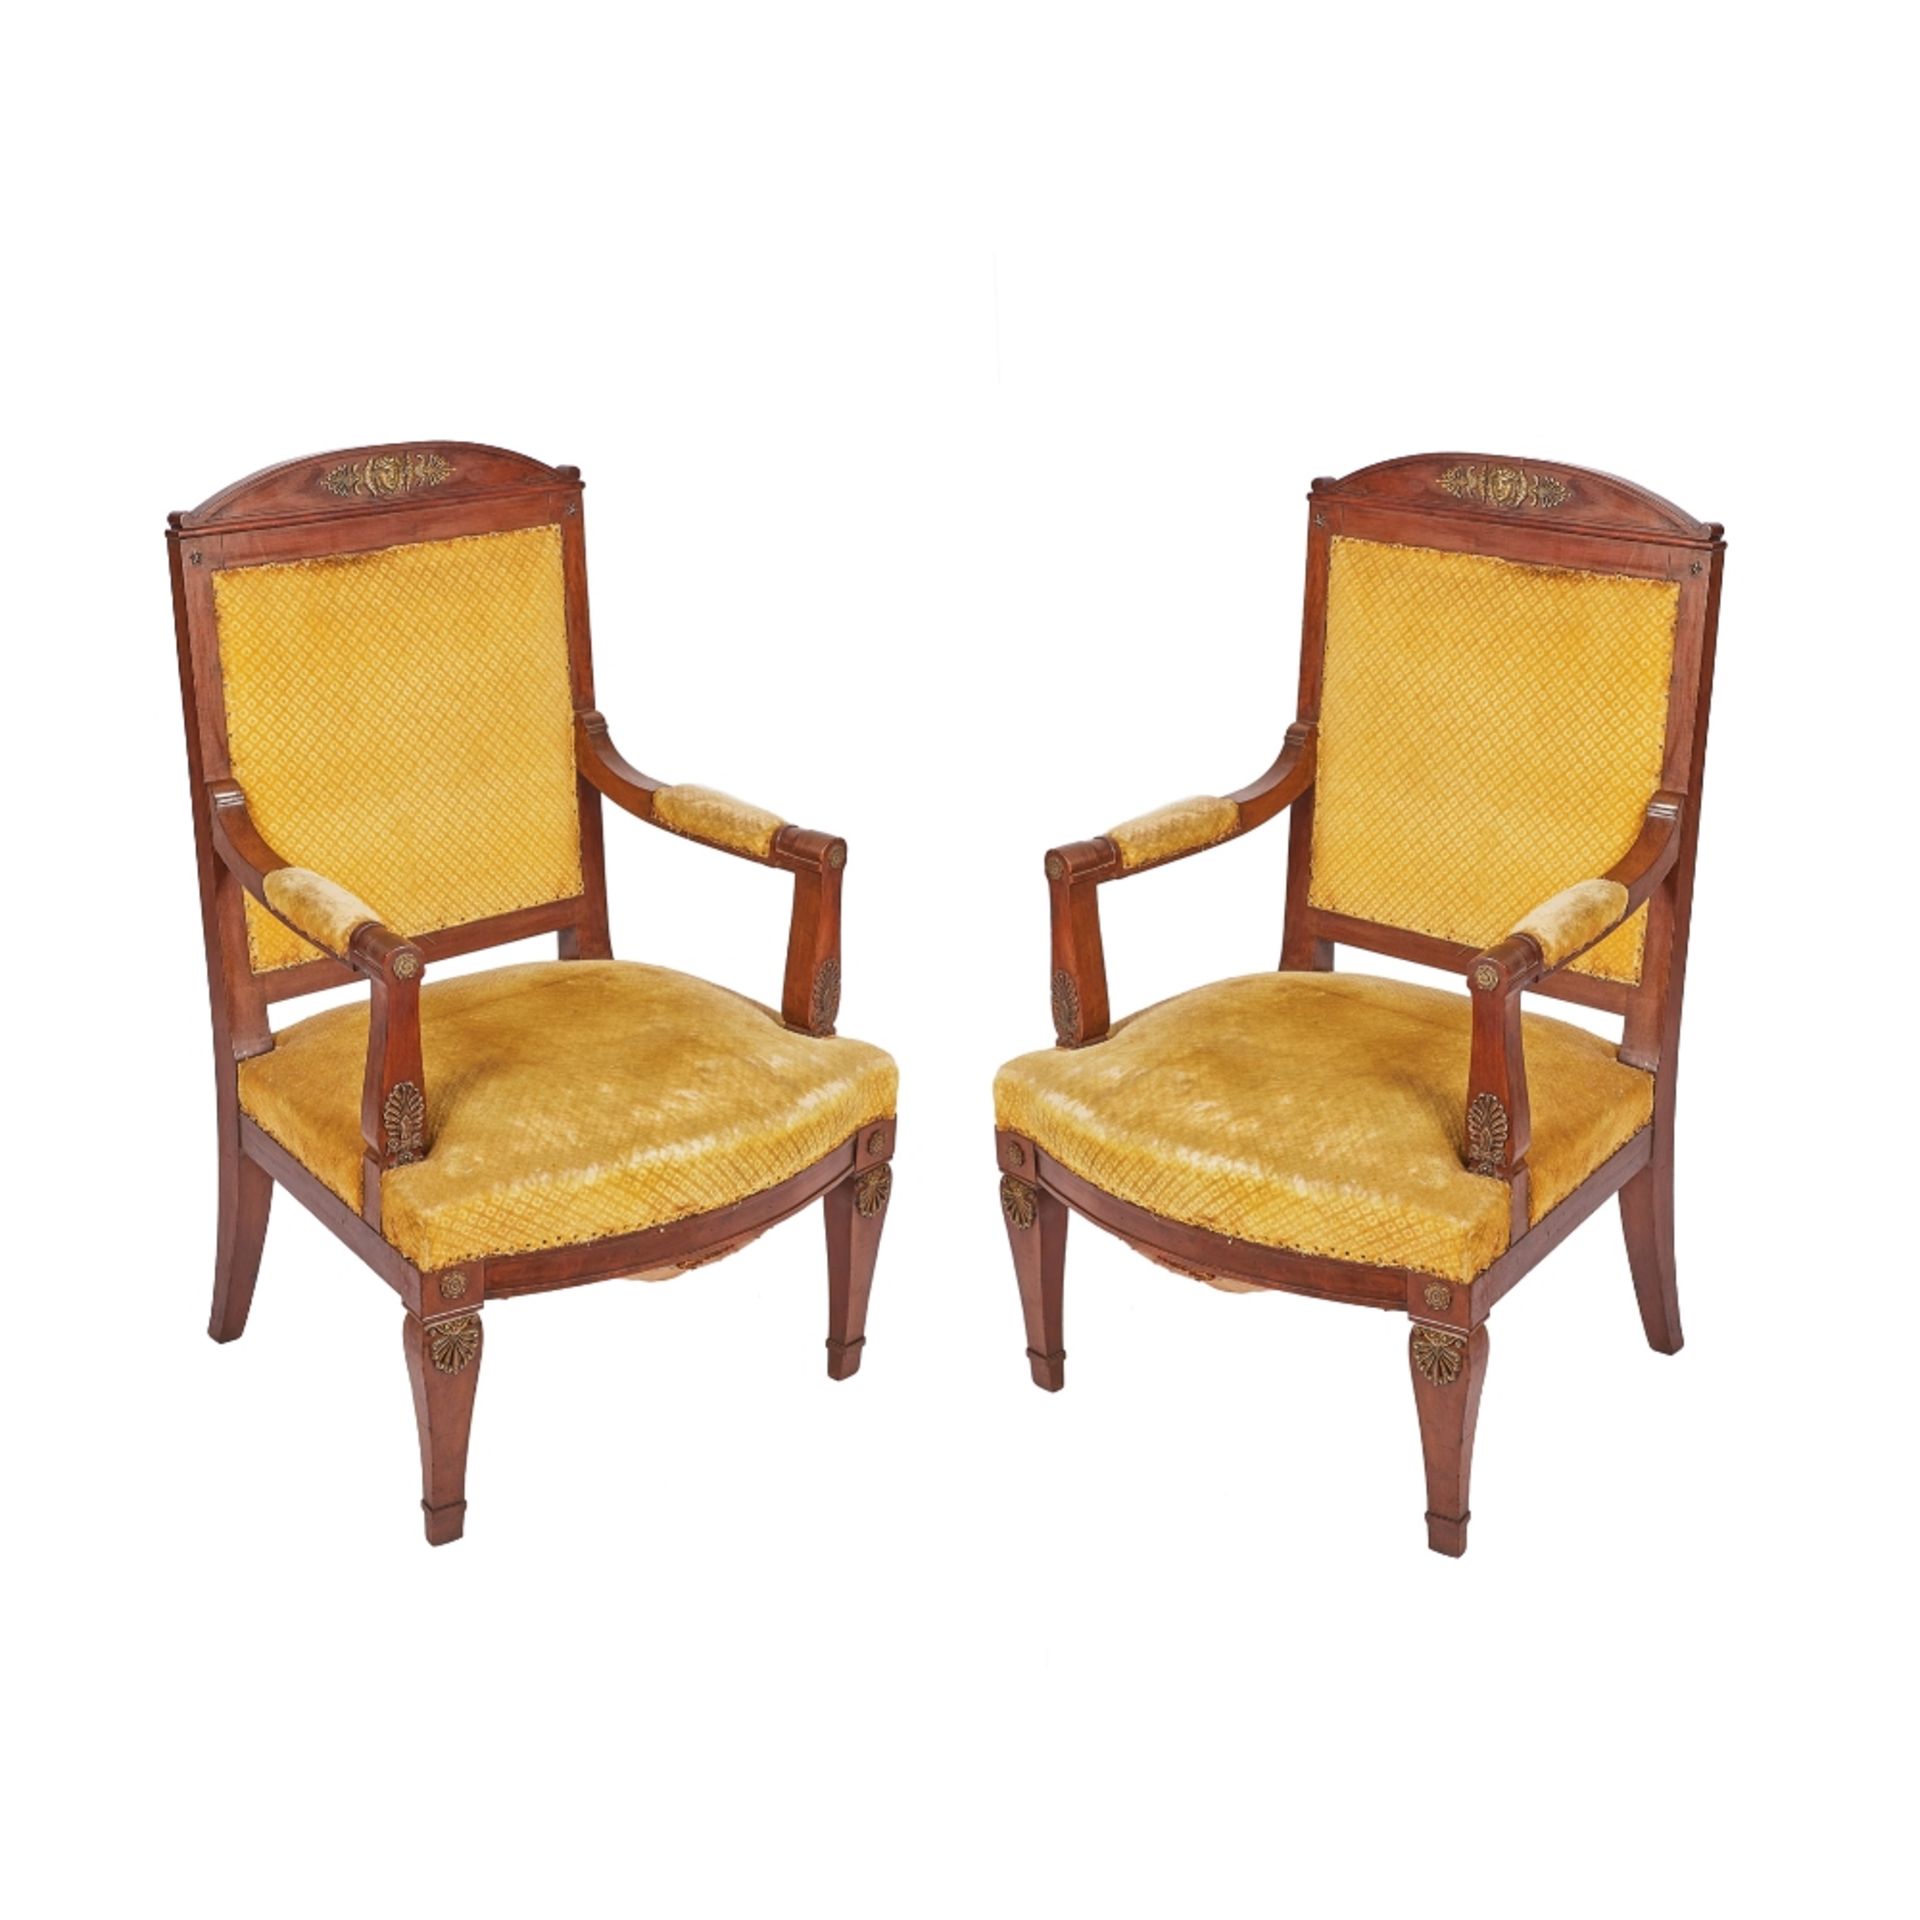 Pareja de sillones estilo imperio en madera de caoba y aplicaciones en bronce, ppios. del s.XX.